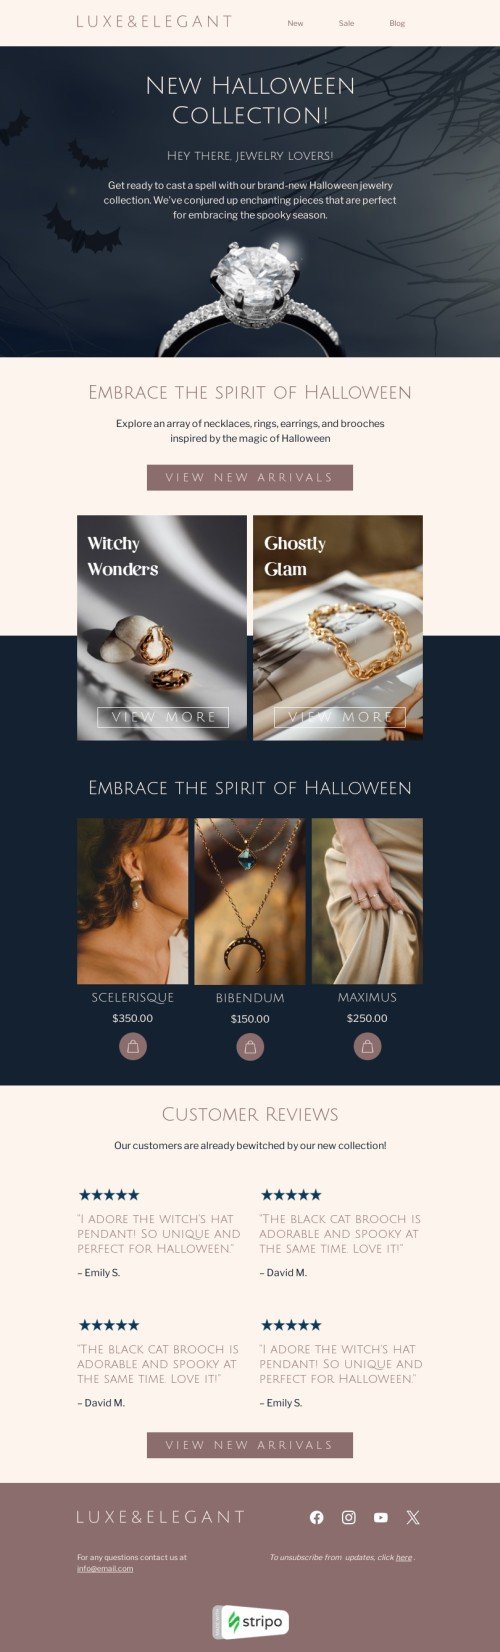 Plantilla de correo electrónico «Amantes de las joyas» de Halloween para la industria de joyería Vista de móvil